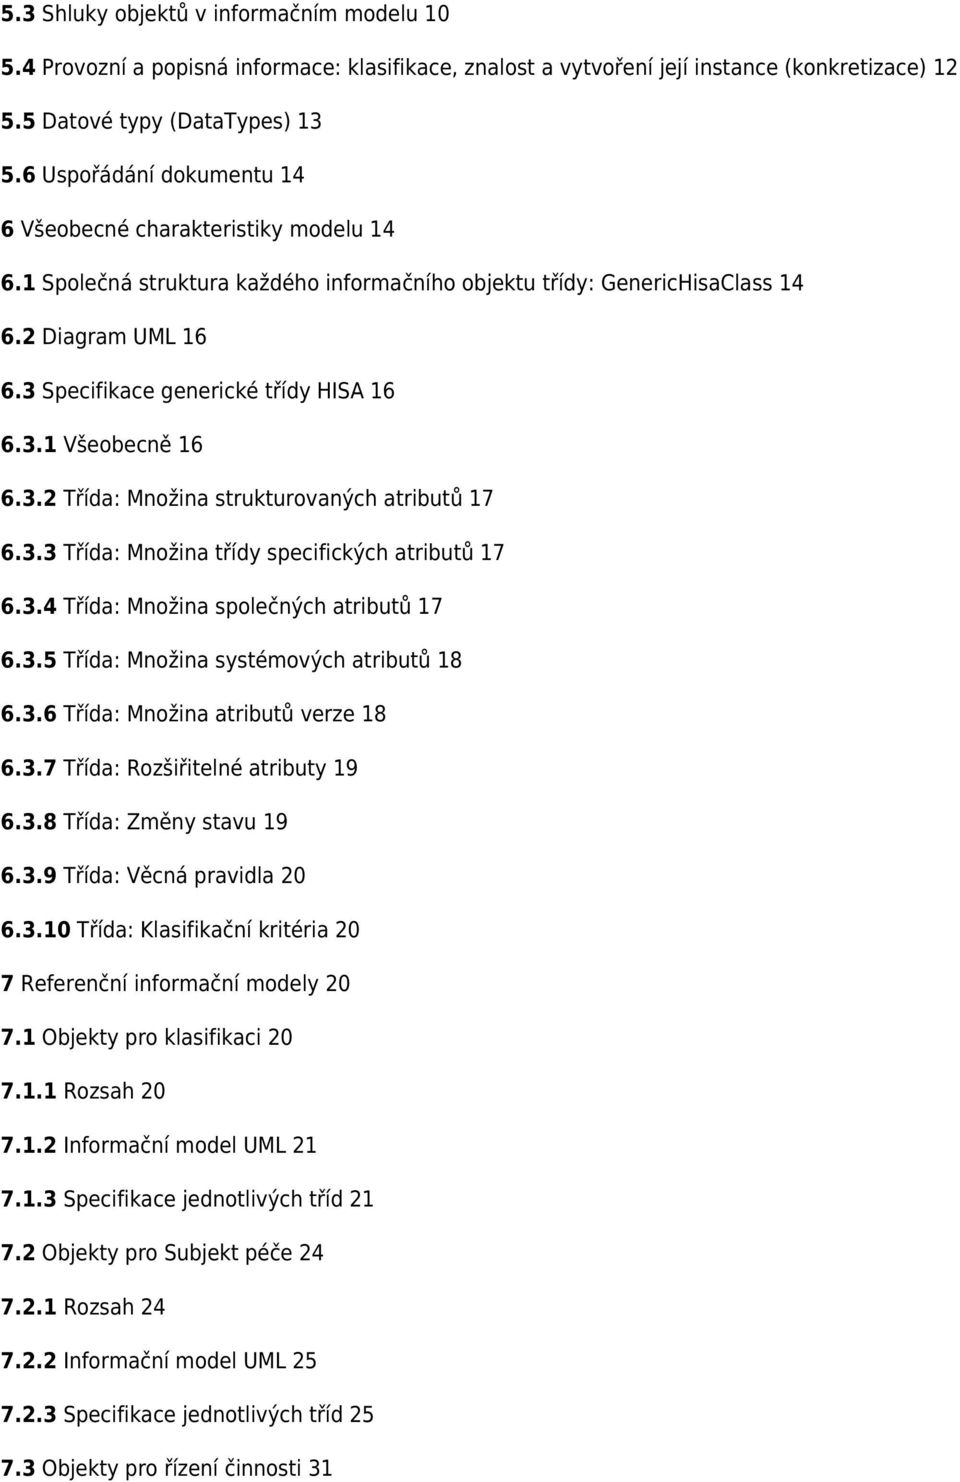 3 Specifikace generické třídy HISA 16 6.3.1 Všeobecně 16 6.3.2 Třída: Množina strukturovaných atributů 17 6.3.3 Třída: Množina třídy specifických atributů 17 6.3.4 Třída: Množina společných atributů 17 6.